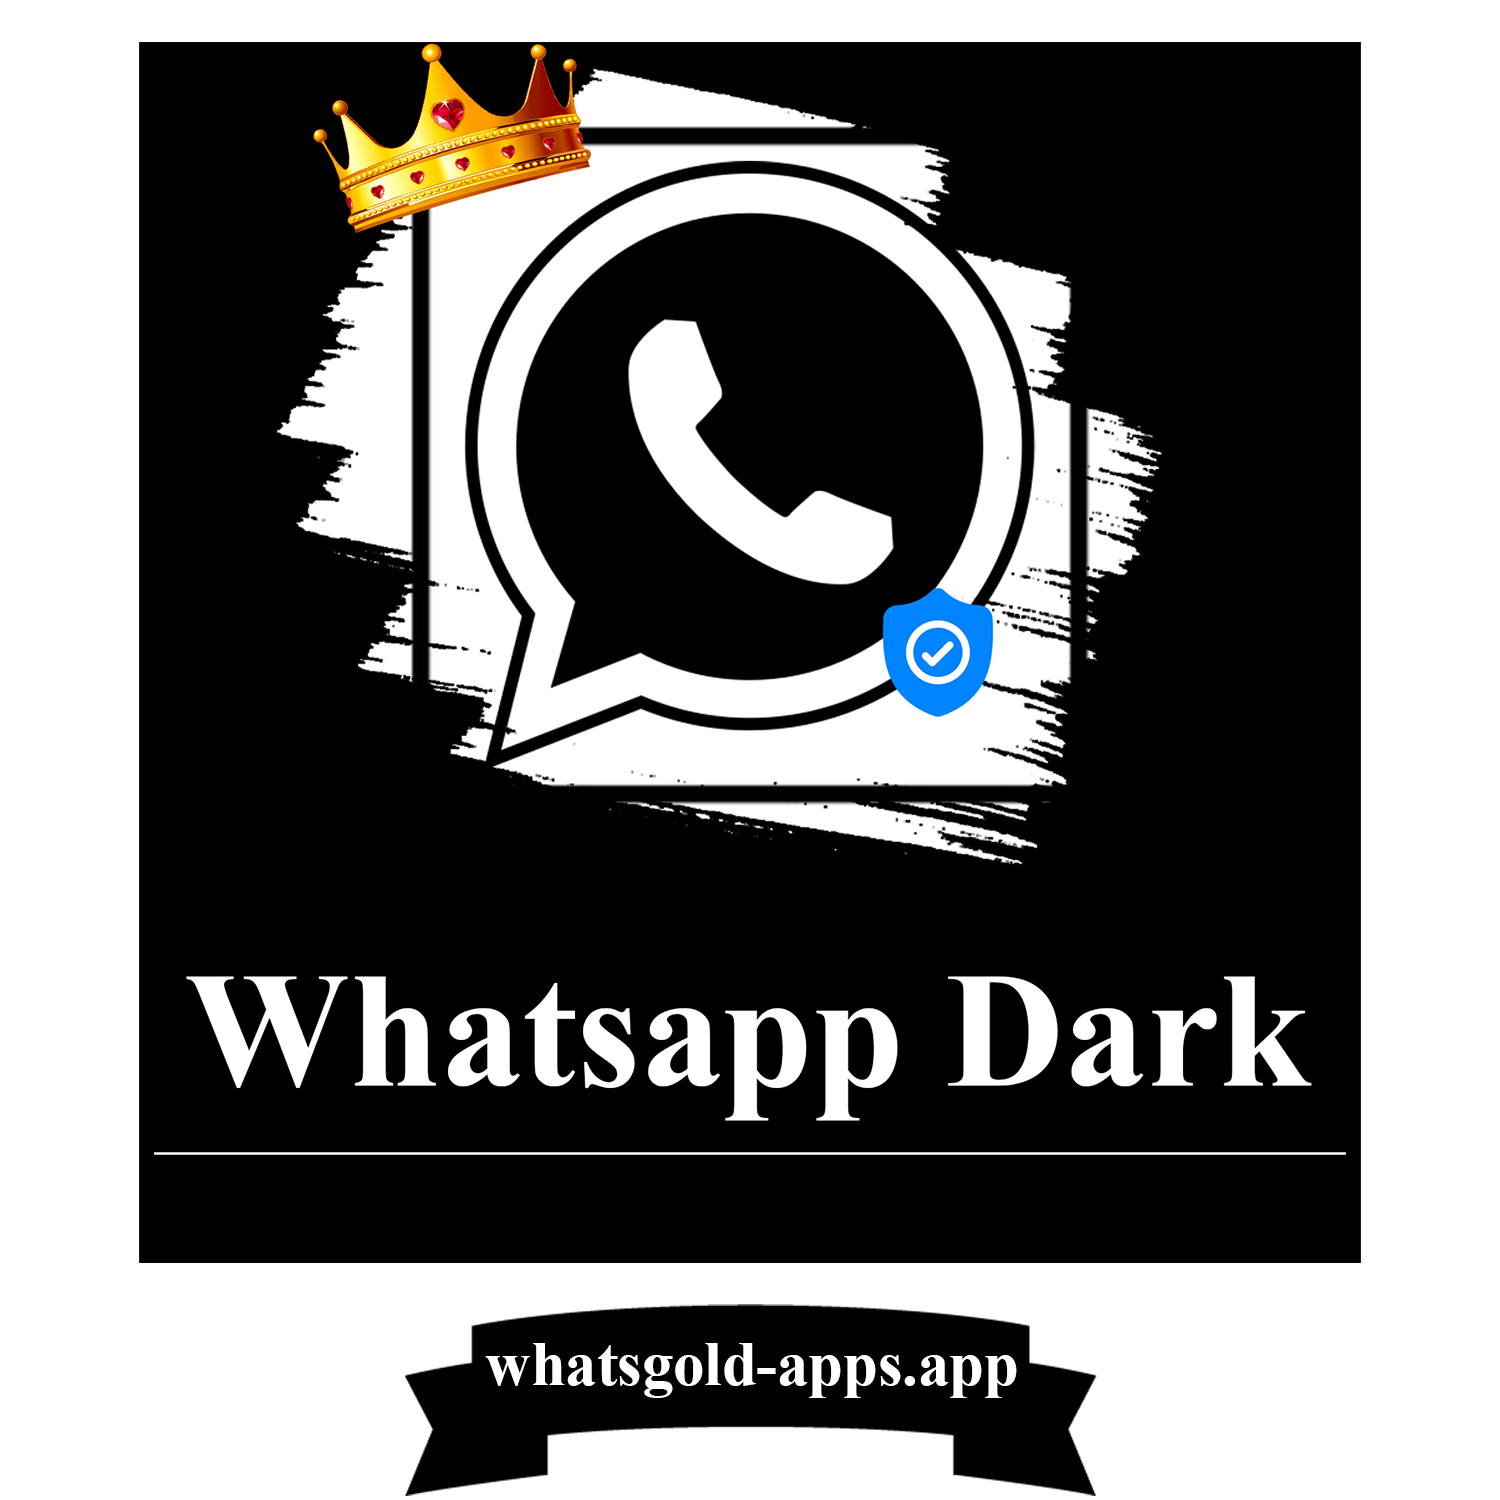 Whatsapp Dark